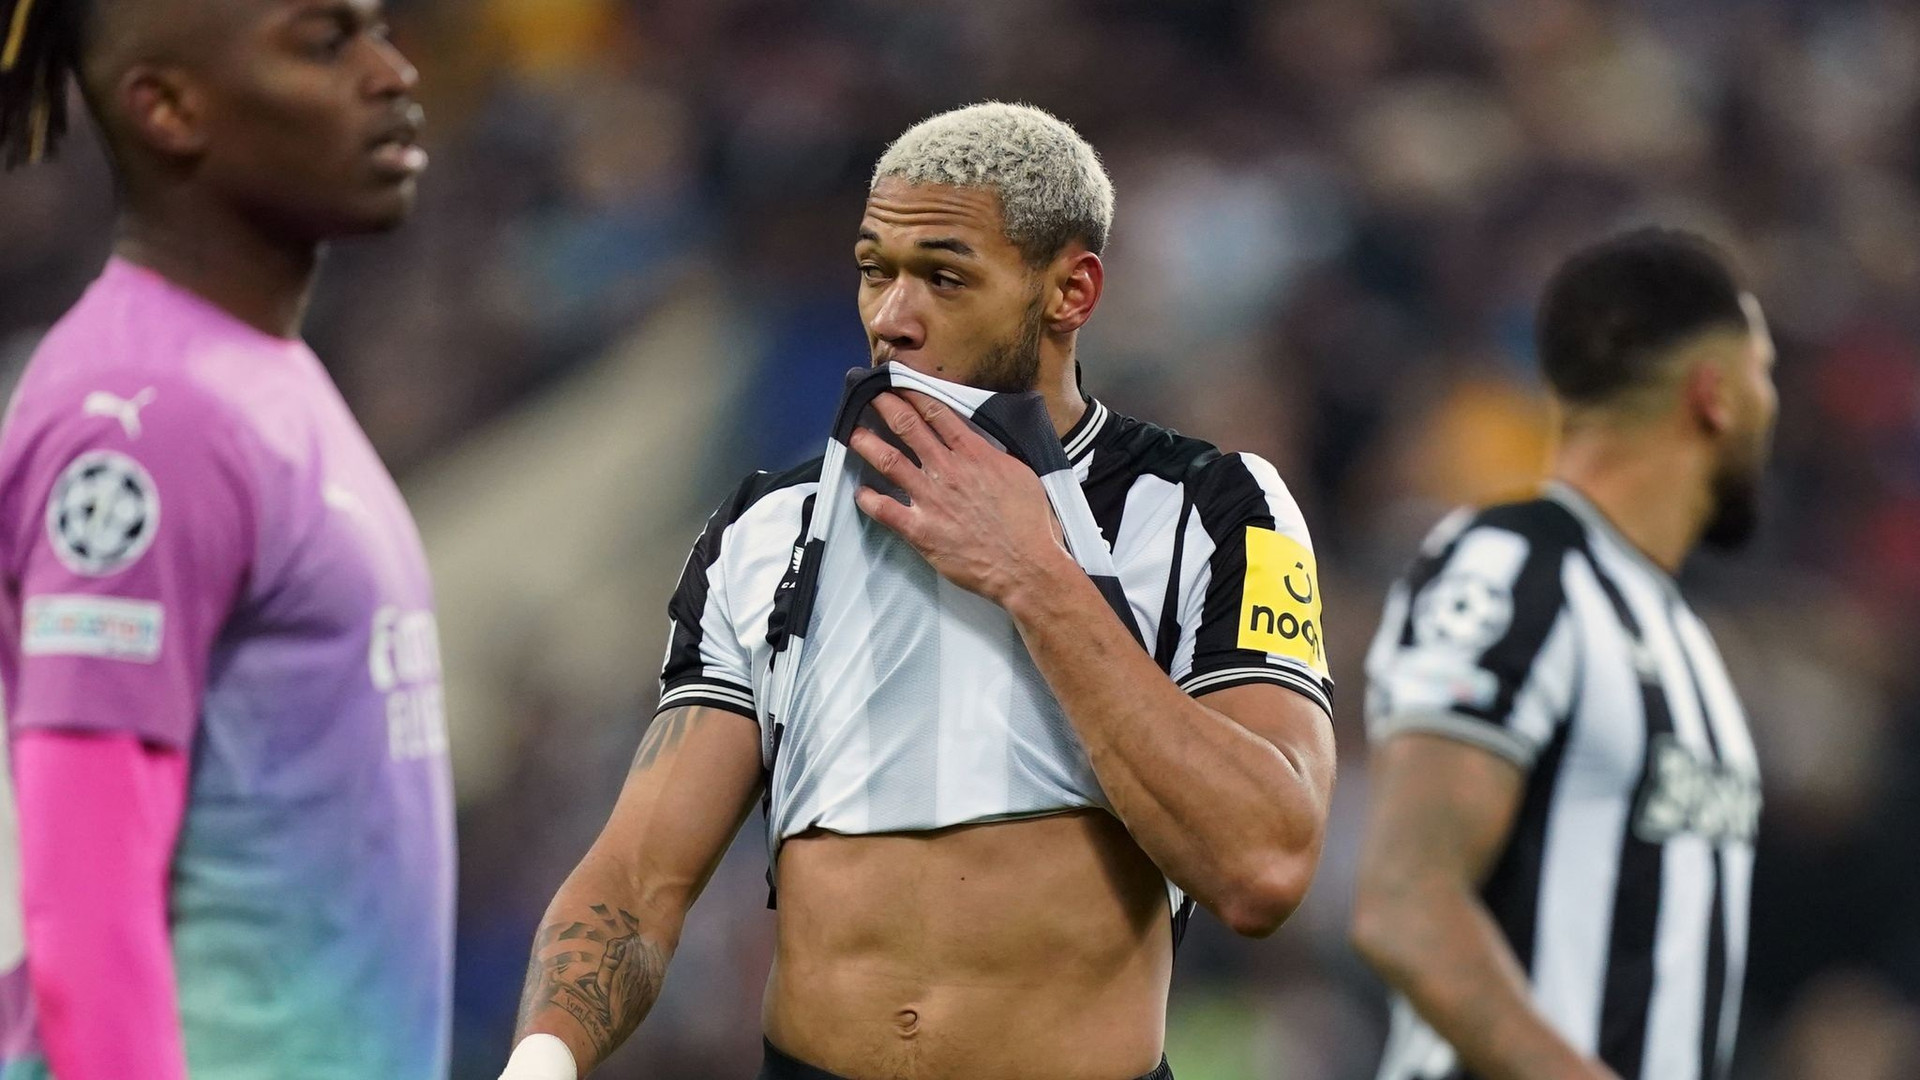 PSG giành vé đi tiếp kịch tính, Newcastle bị đẩy xuống cuối bảng tử thần - 3